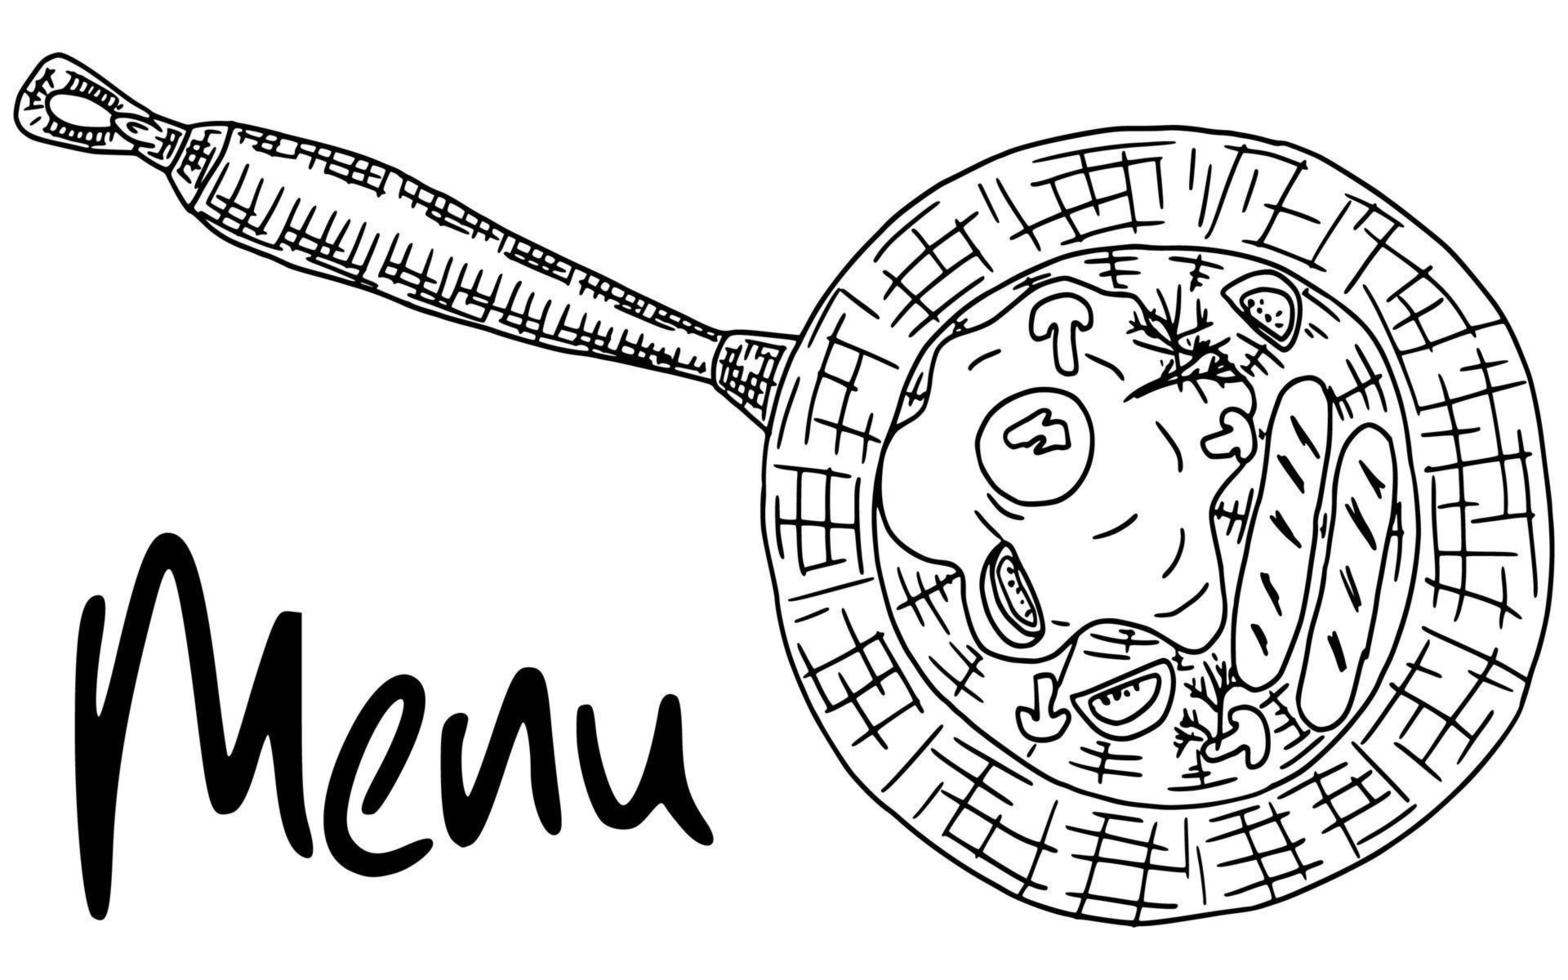 poêle à frire croquis dessin nourriture doodle contour vecteur